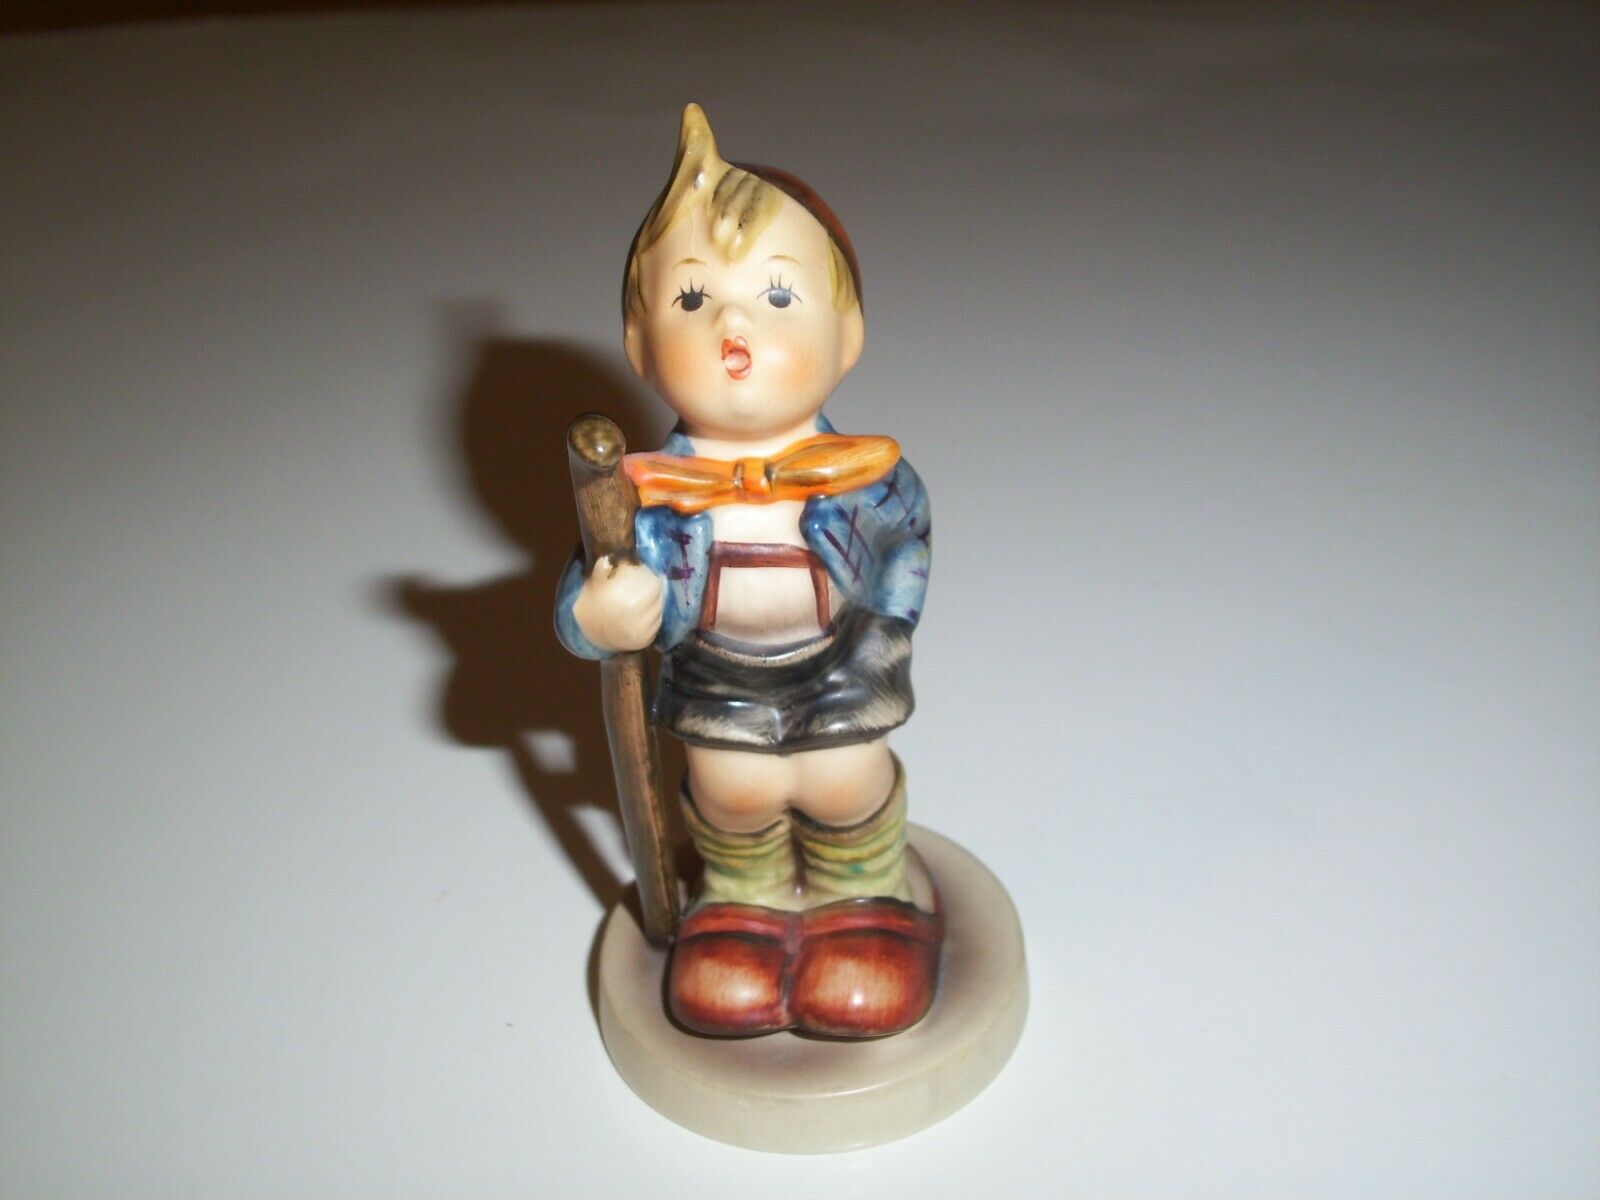 Vintage Hummel Figurine # 16 2/0 Little Hiker Boy With Walking Stick Excellent!